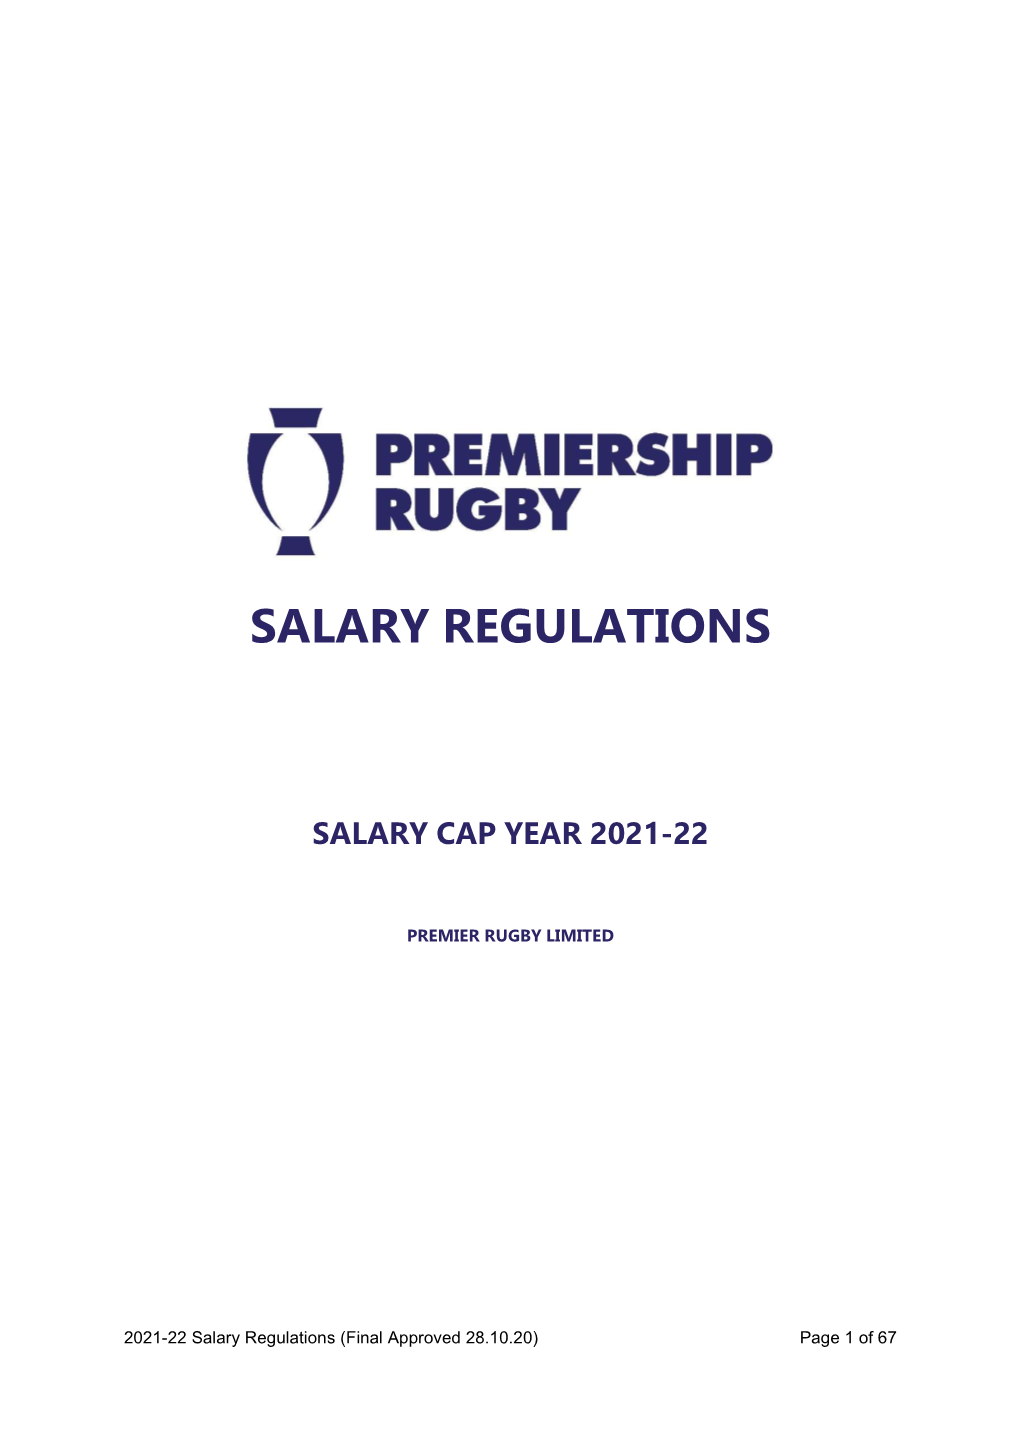 Salary Regulations